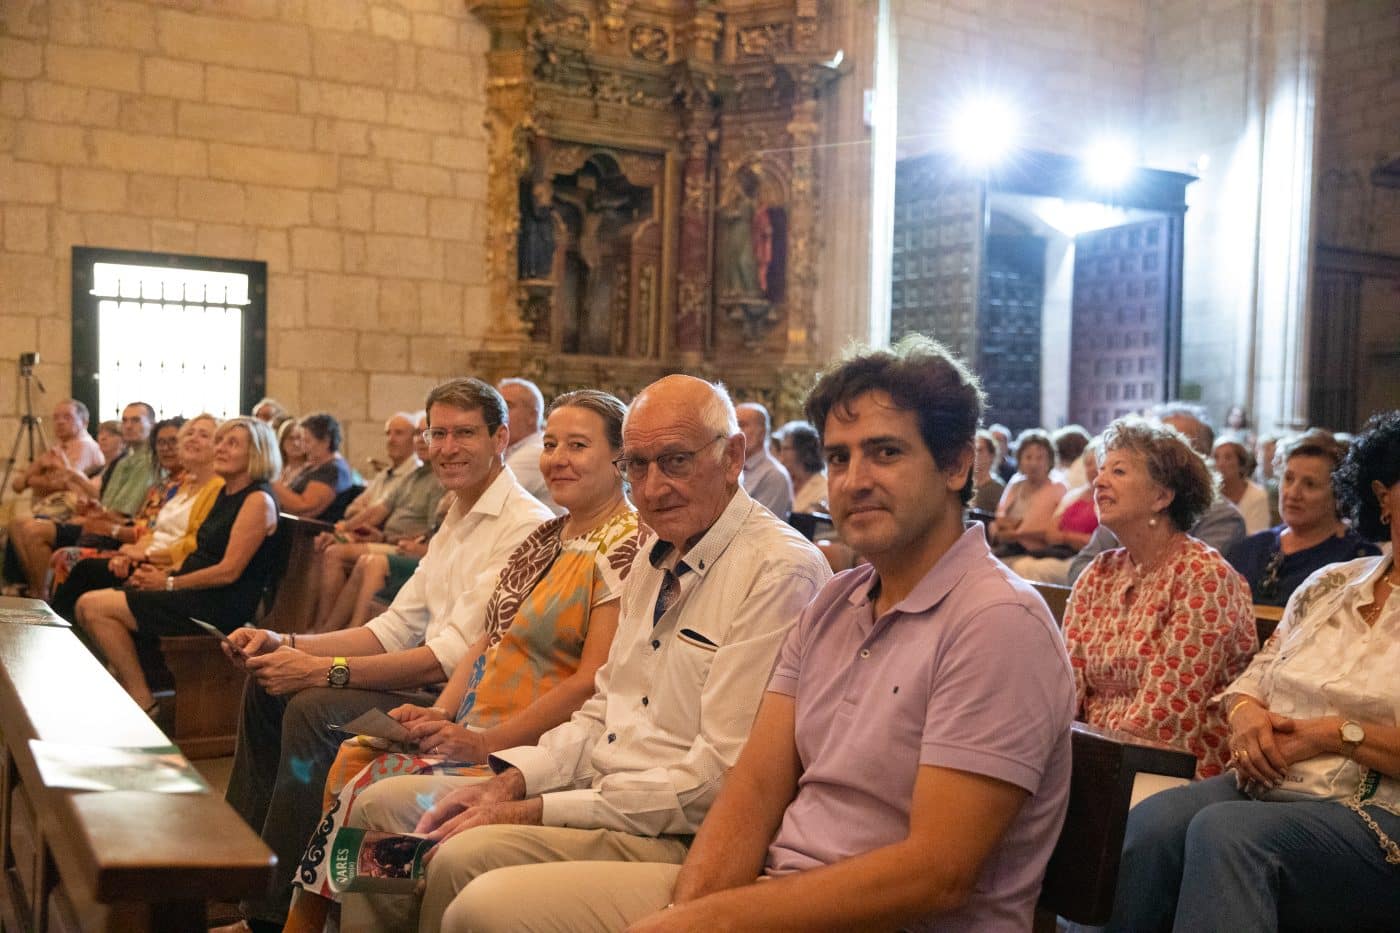 FOTOS: Concierto de música clásica en Bañares 1